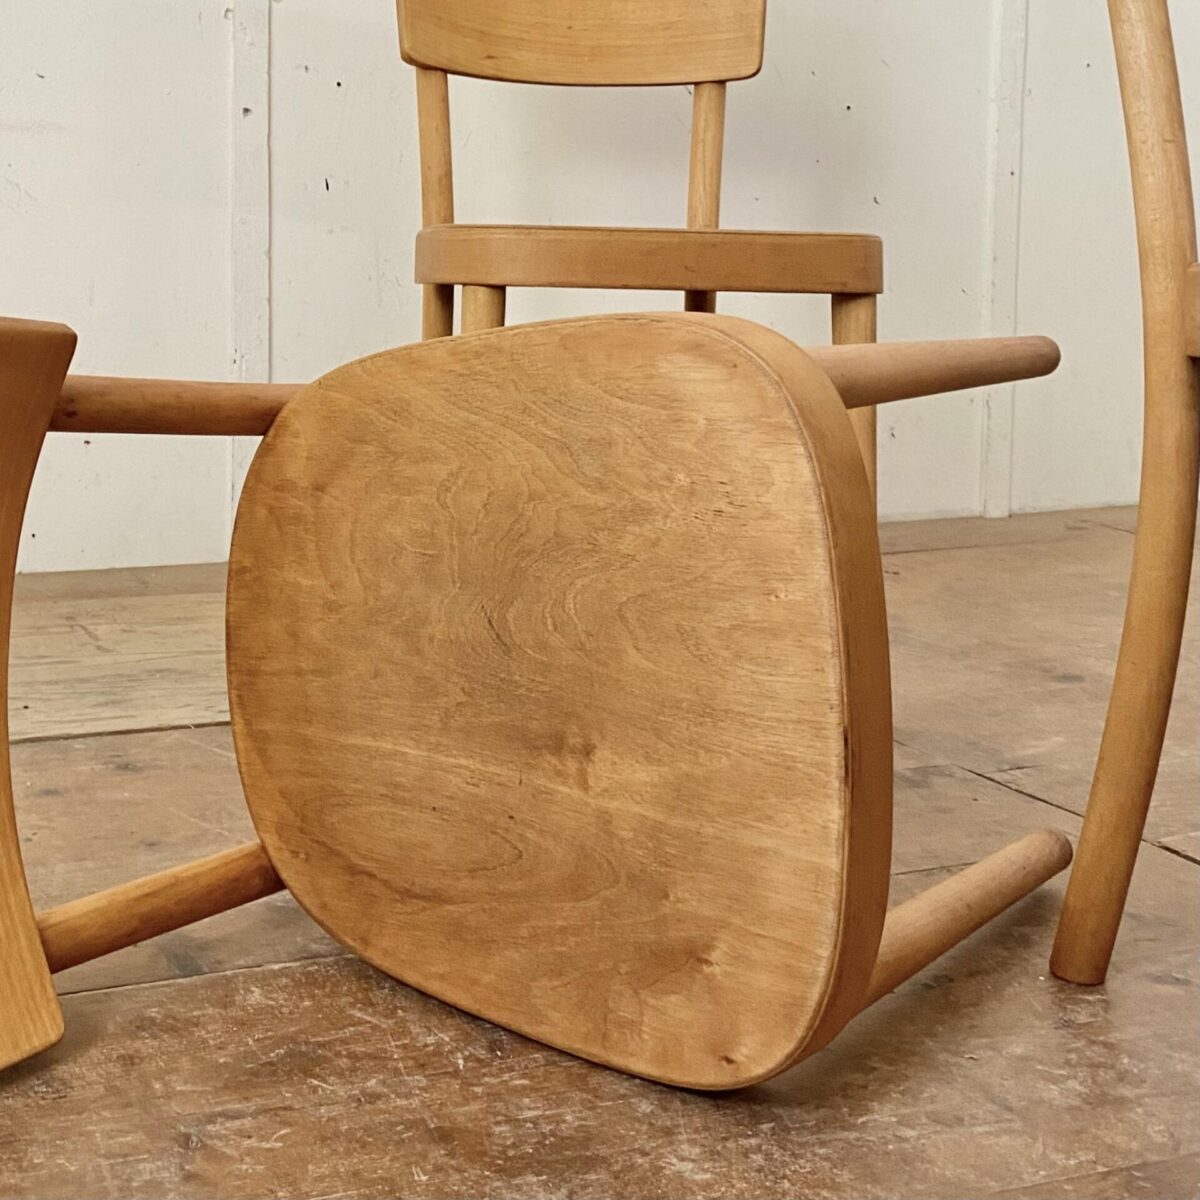 Deuxieme.shop 4er Set Horgenglarus Stühle, mit ergonomisch hohem Rücken, und Rundbeinen. Horgen Glarus Safran